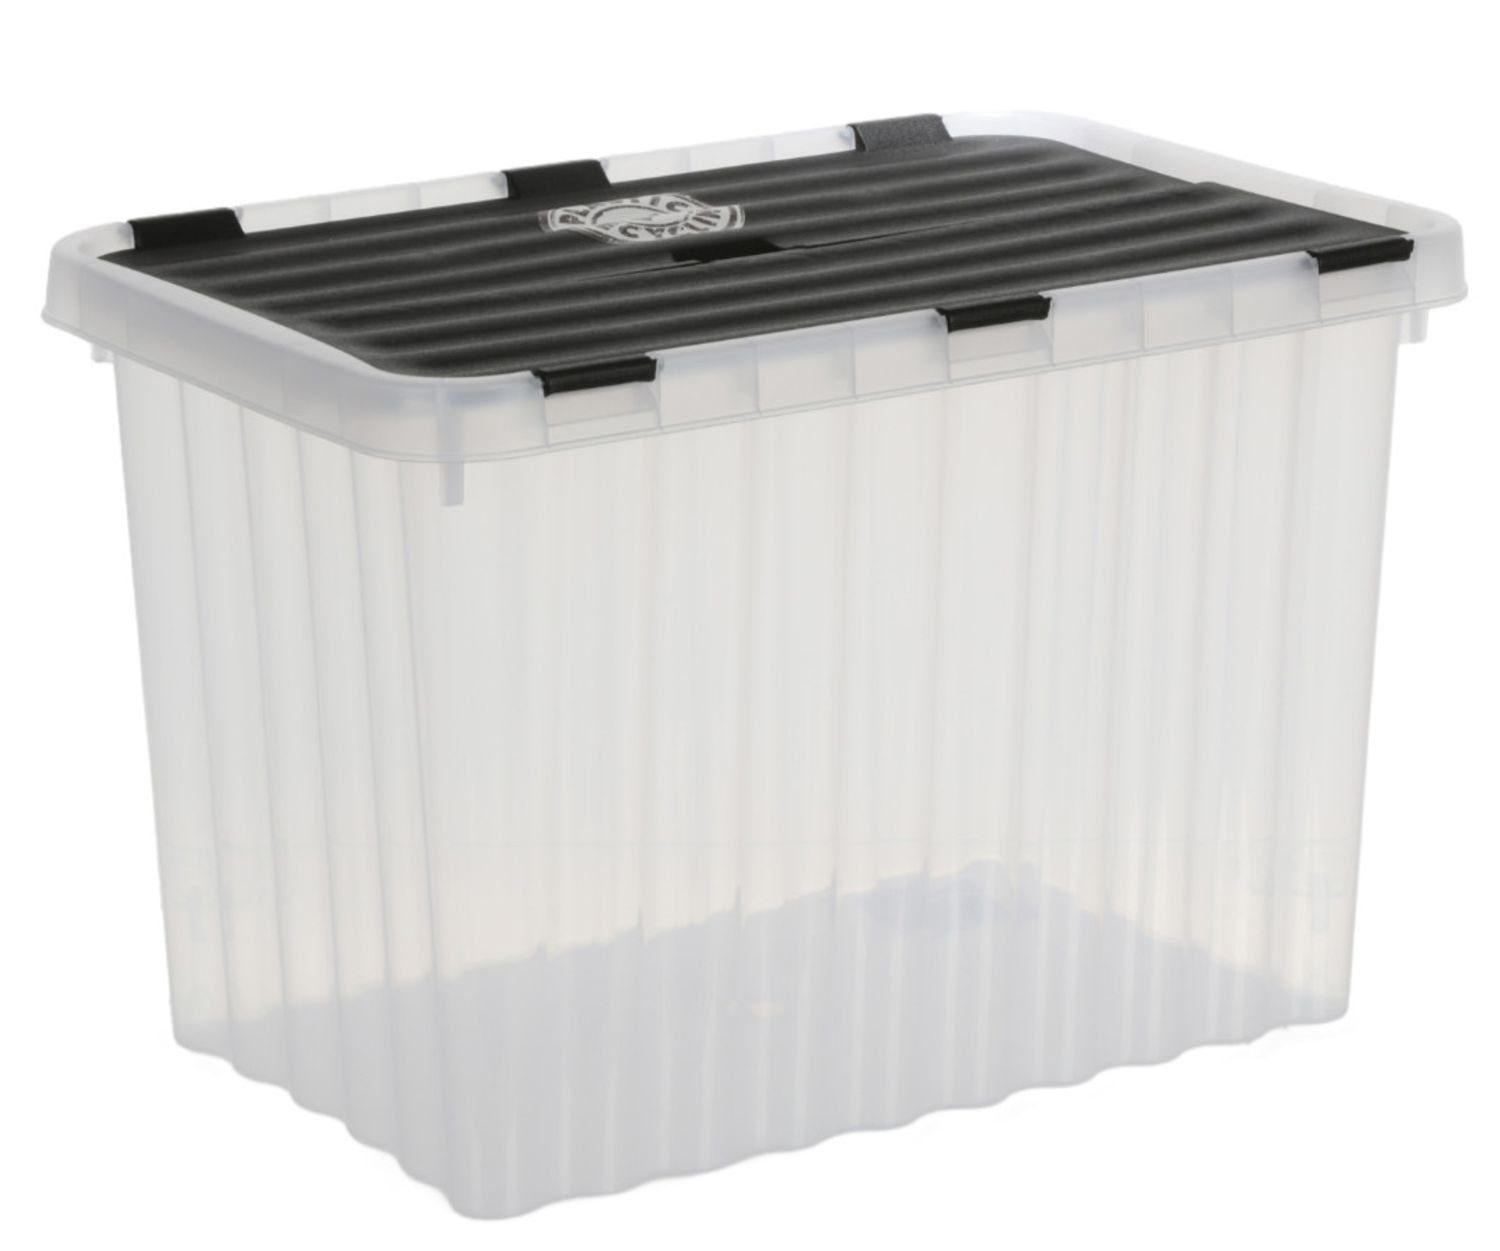 tillvex® Aufbewahrungsbox mit Deckel Aufbewahrung Box Ordnungsboxen Küche  Stapel